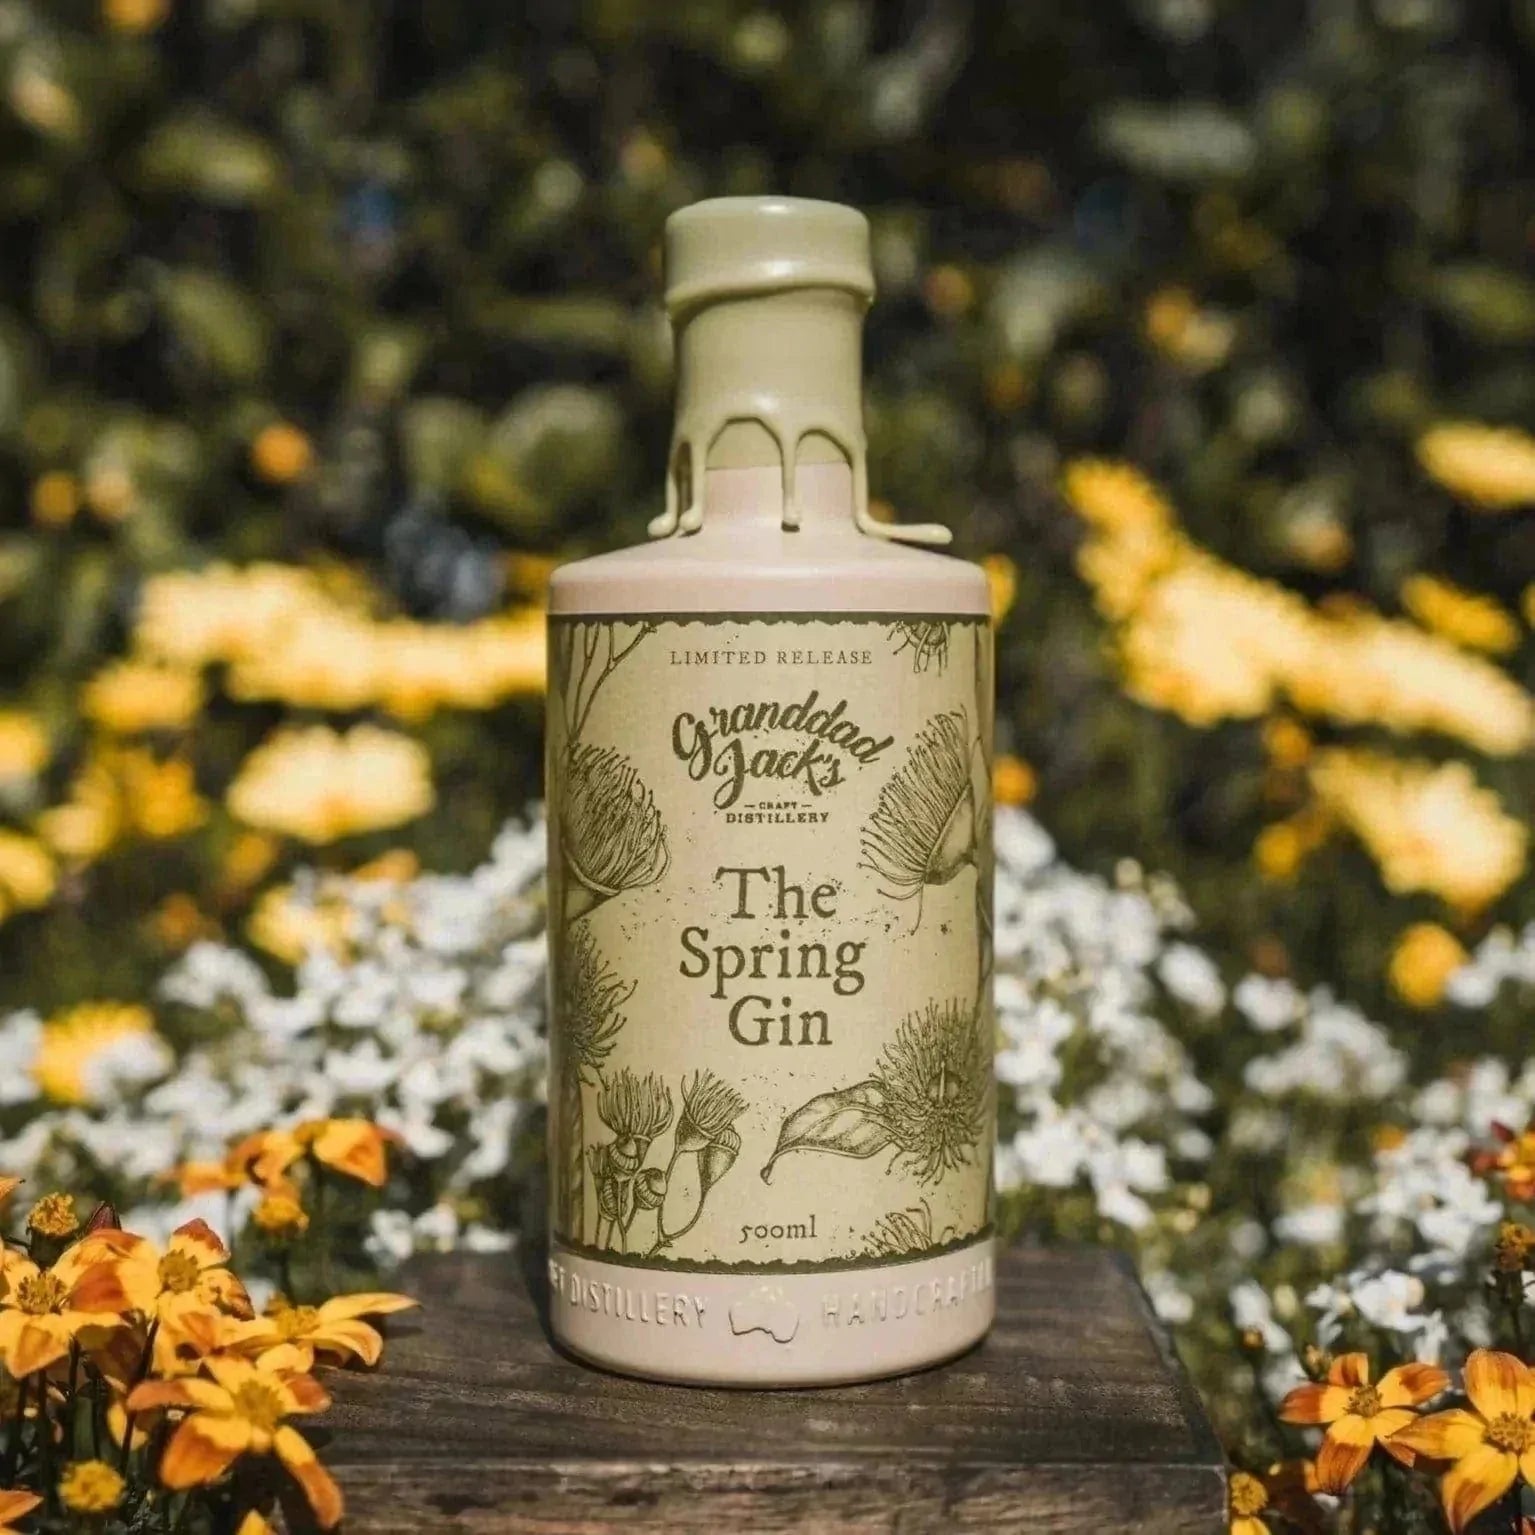 Spring Gin - Granddad Jack's Craft Distillery